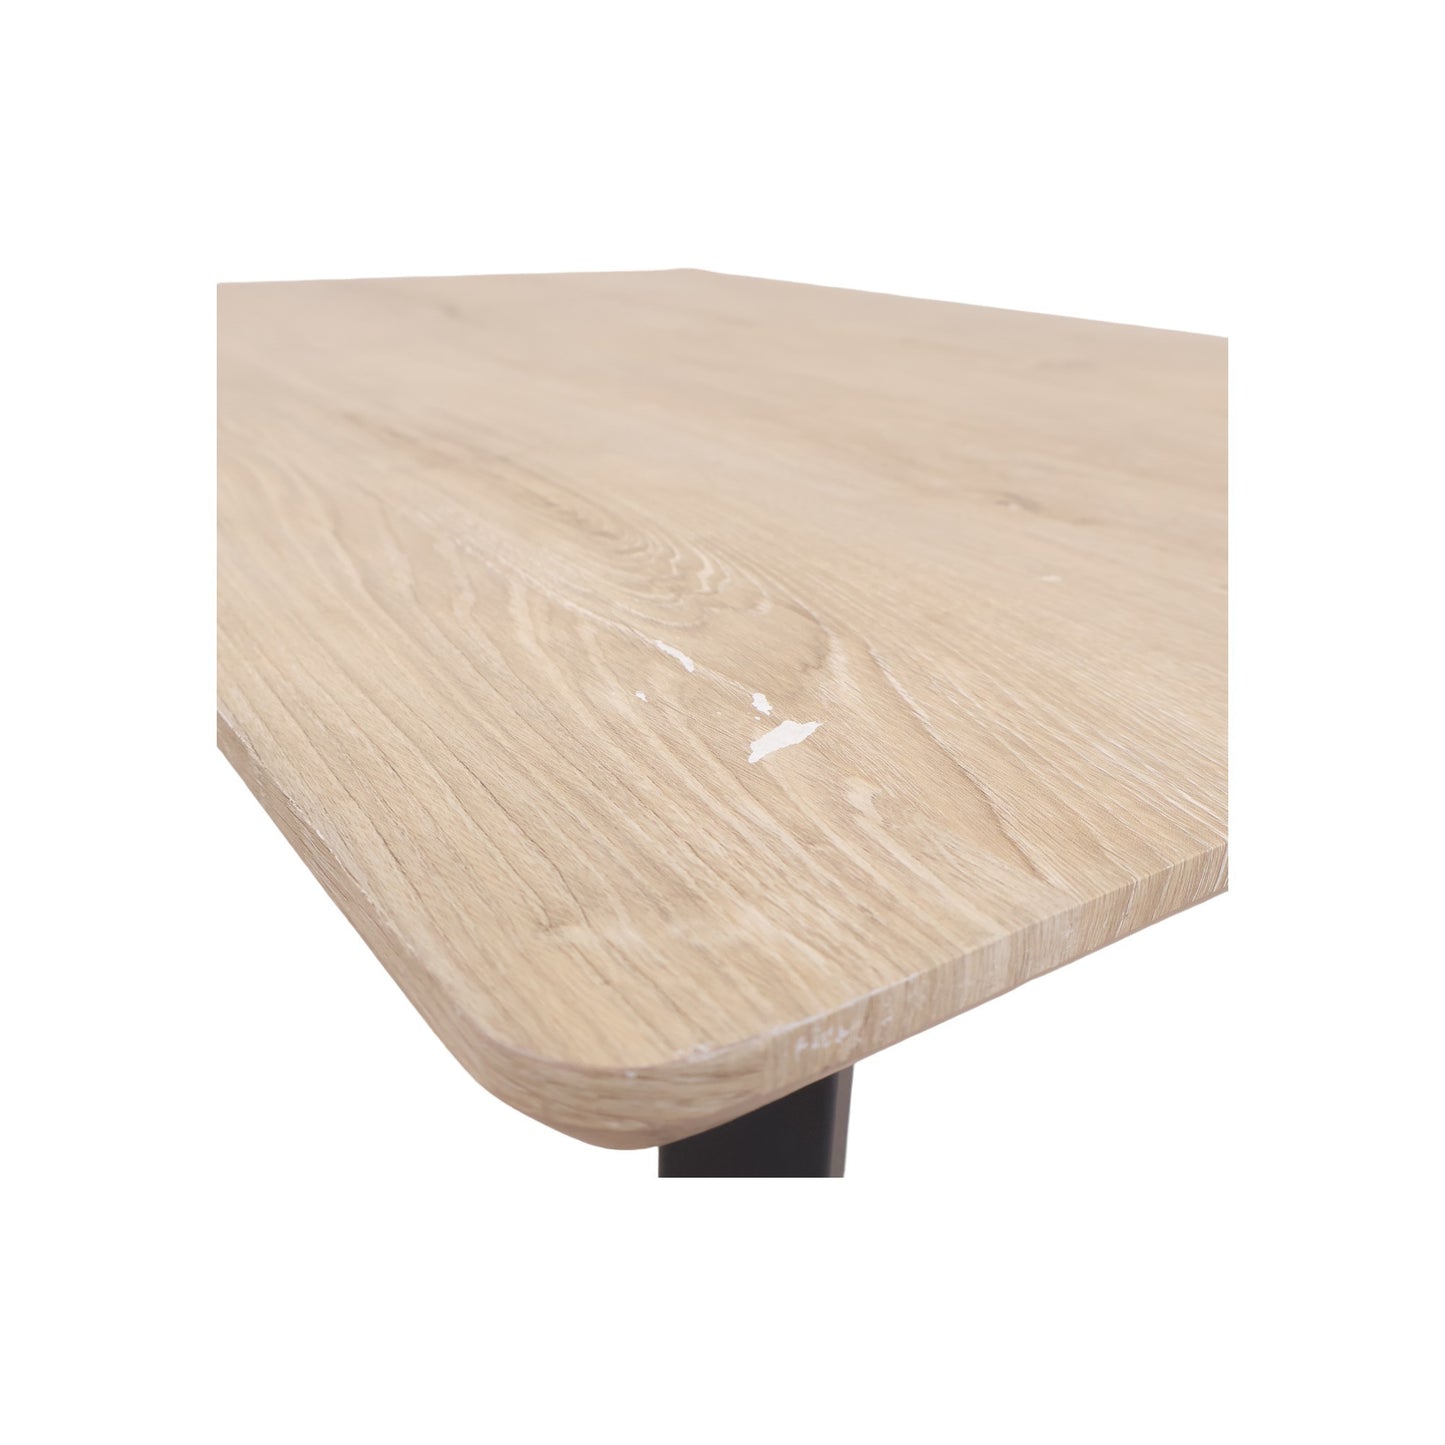 120x80 cm, Spisebord i minimalistisk design. Lys natur / sort